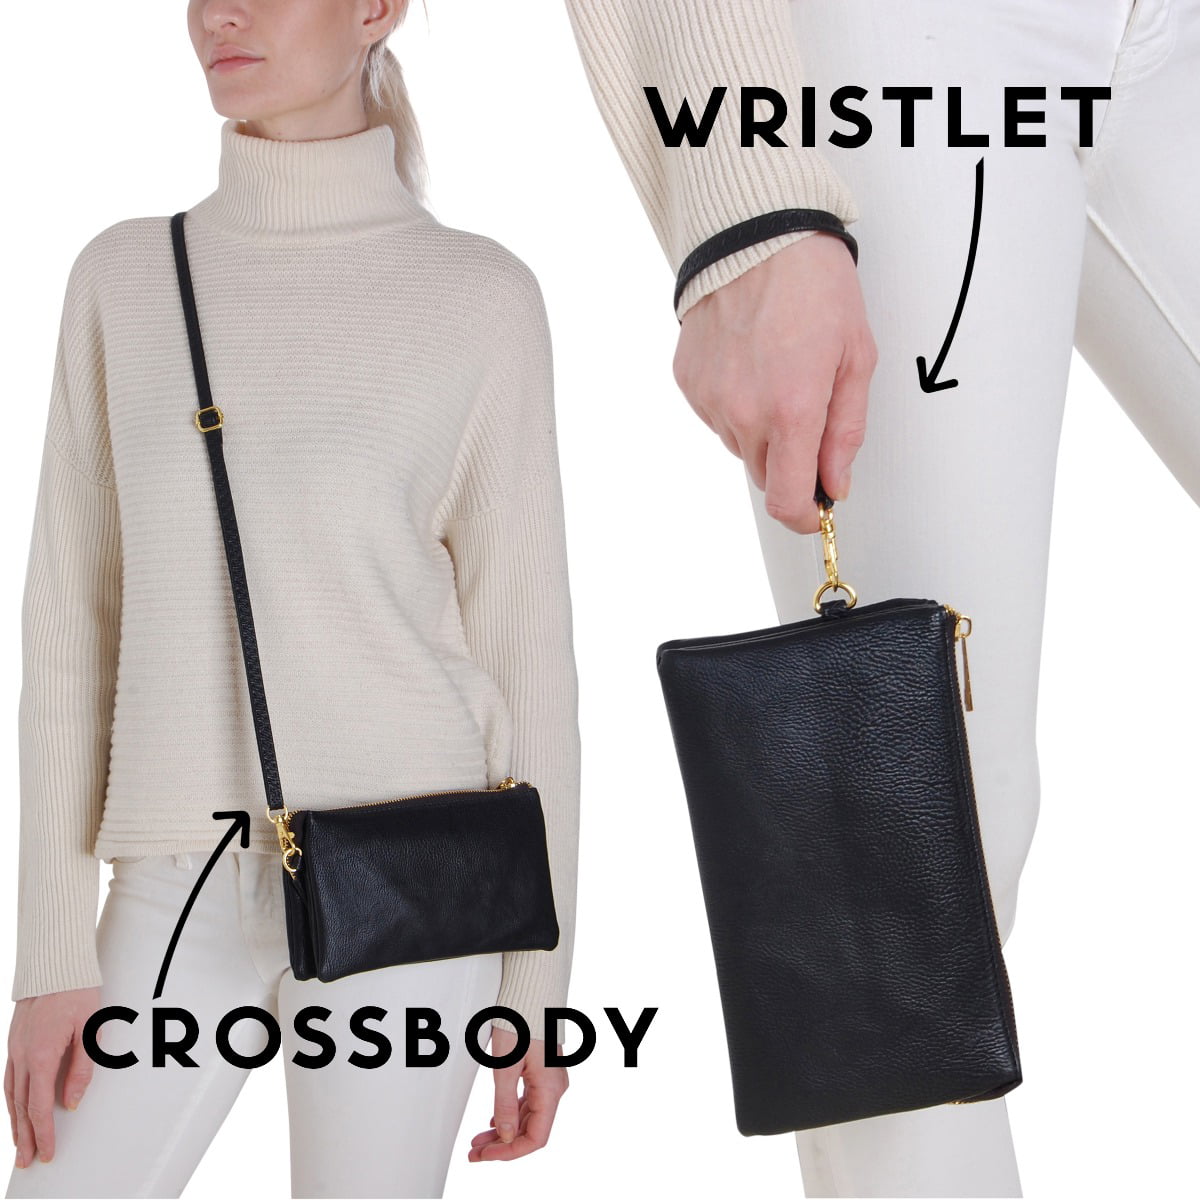 Clare V. Double Sac Bretelle Cross Body Bag in Black